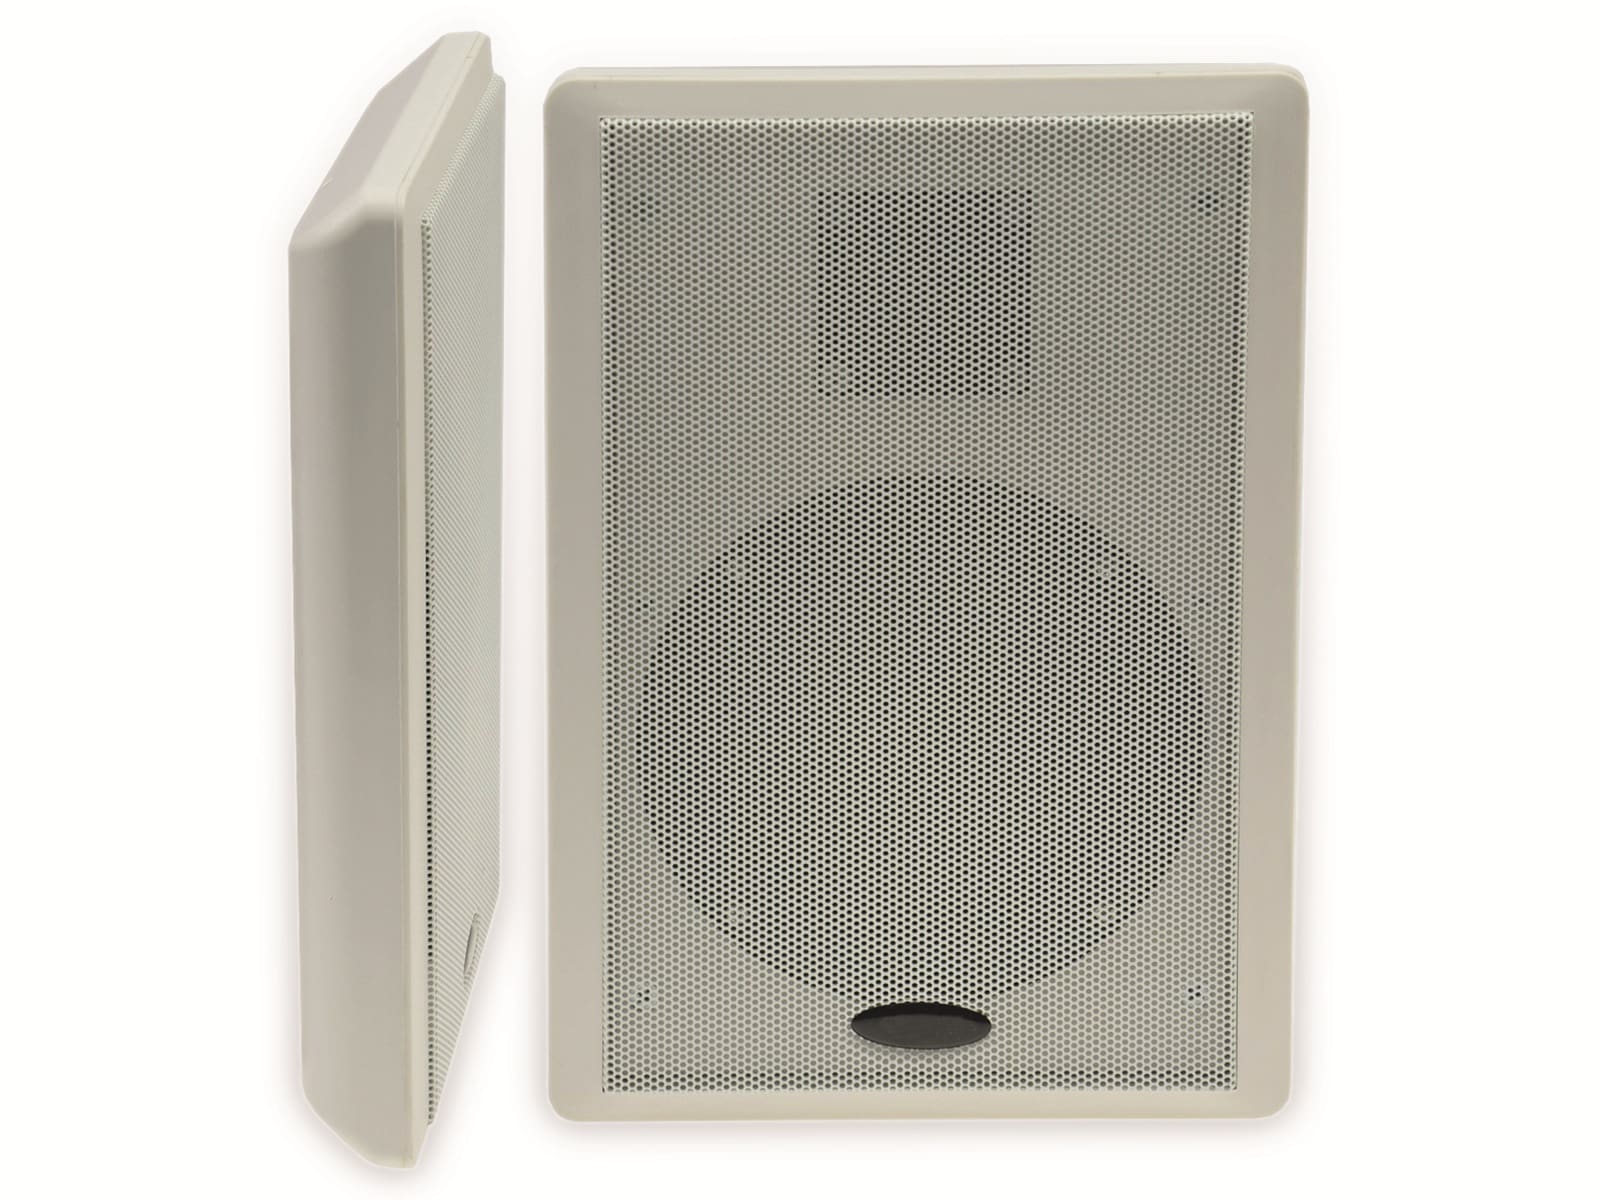 CHILITEC Flach-Lautsprecher 17804, 40 W, weiß, 2 Stück